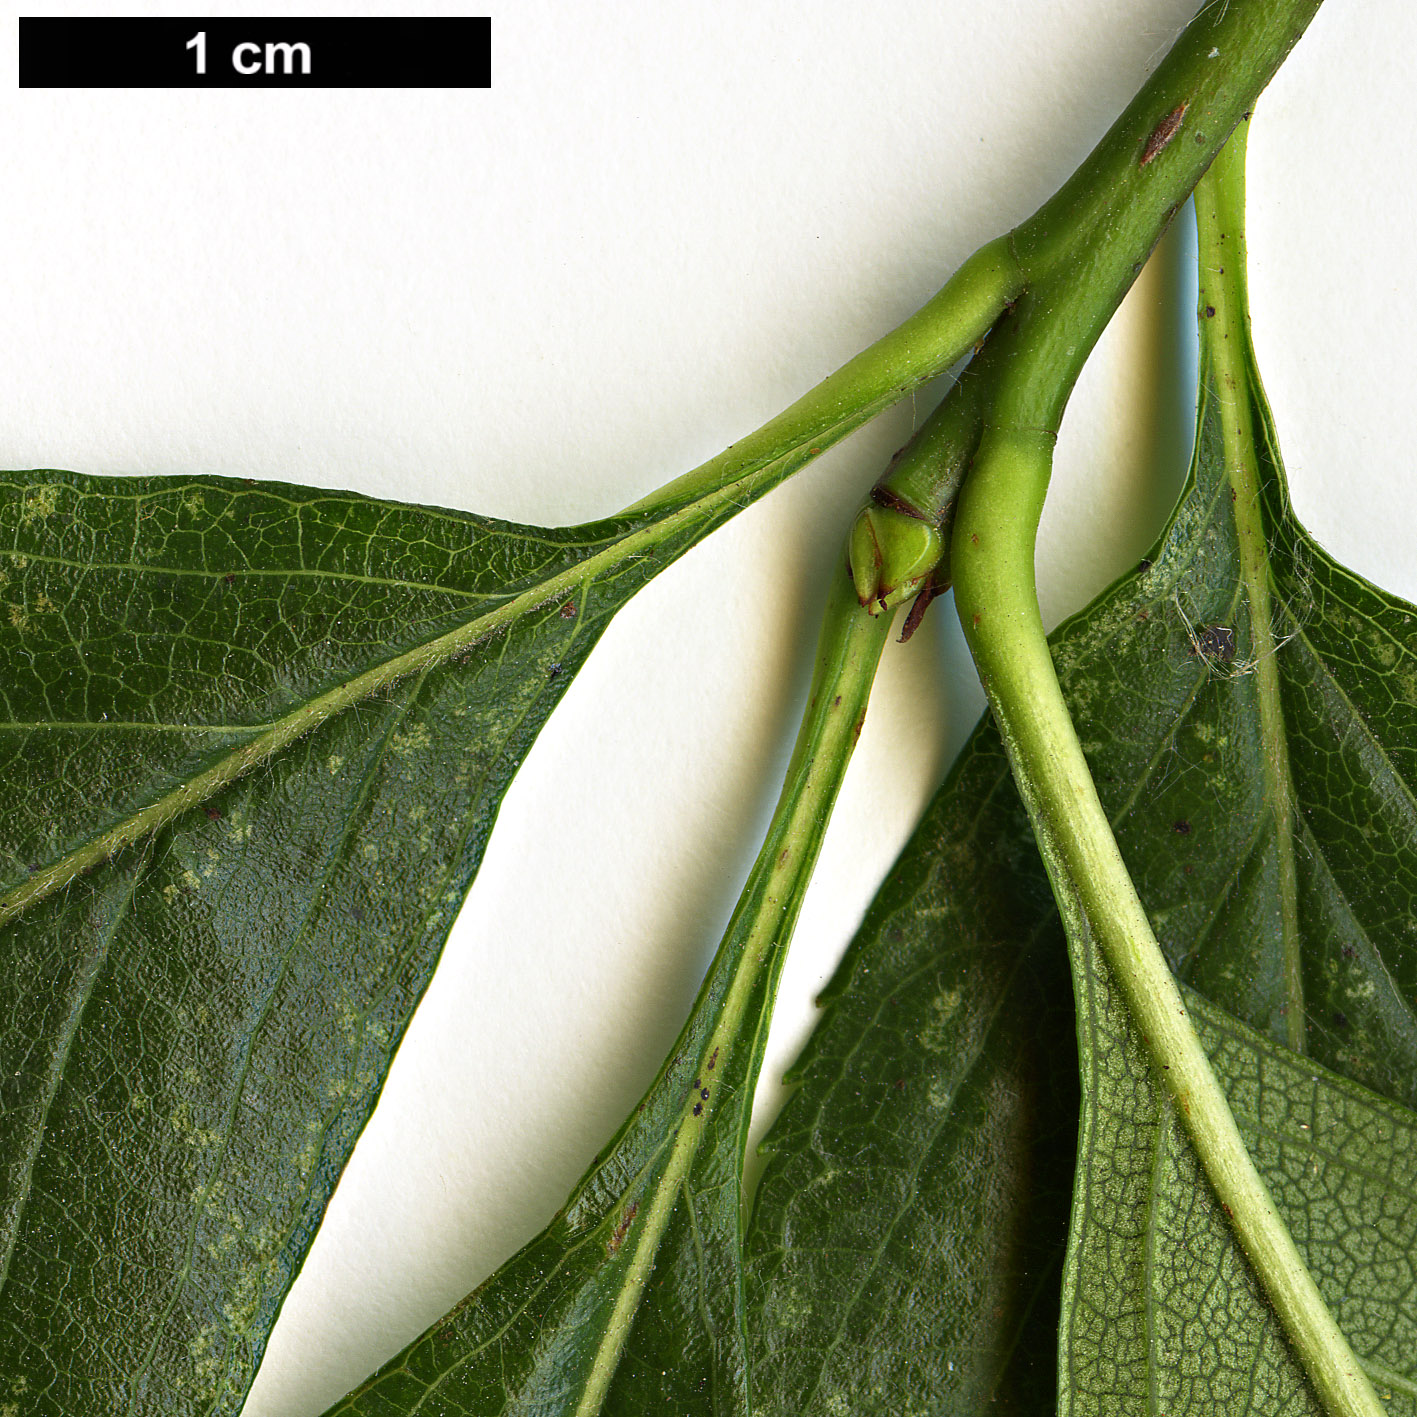 High resolution image: Family: Rosaceae - Genus: Crataegus - Taxon: persimilis - SpeciesSub: 'Splendens'